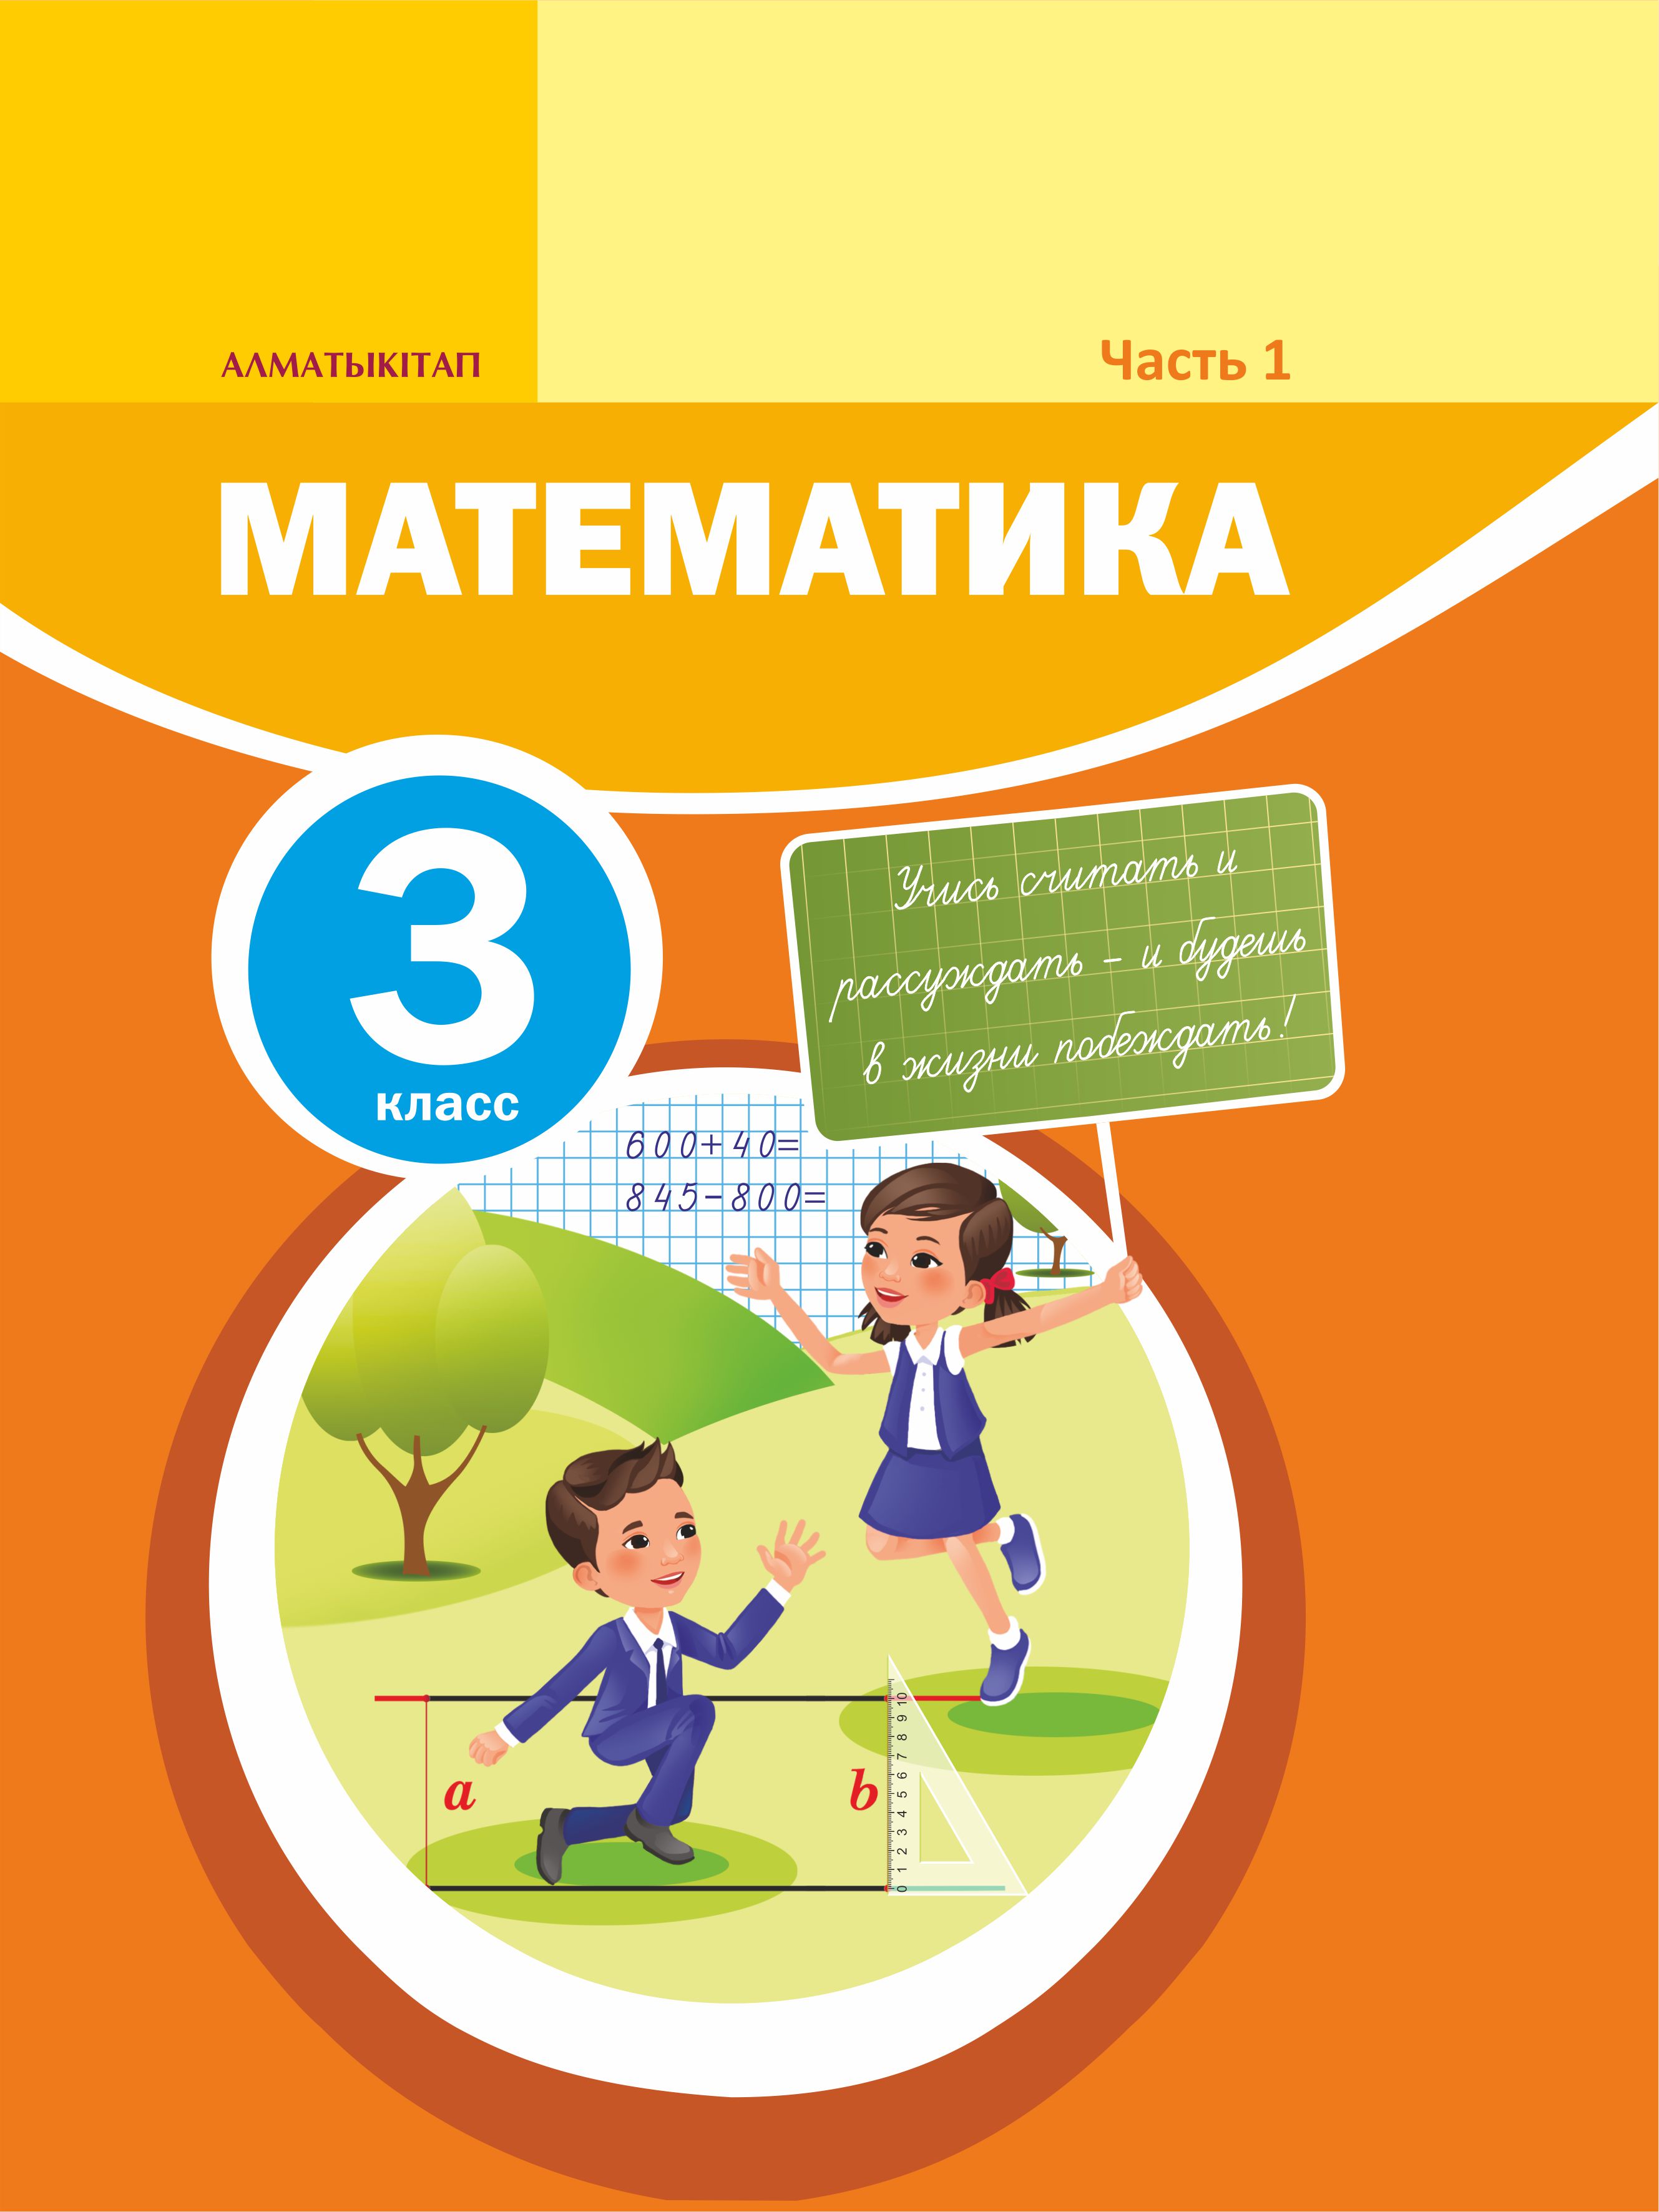 Математика класс. Учебник по математике 3 класс. Учебник математики 3 класс. Пособие по математике 3 класс. Книга математика 3 класс.